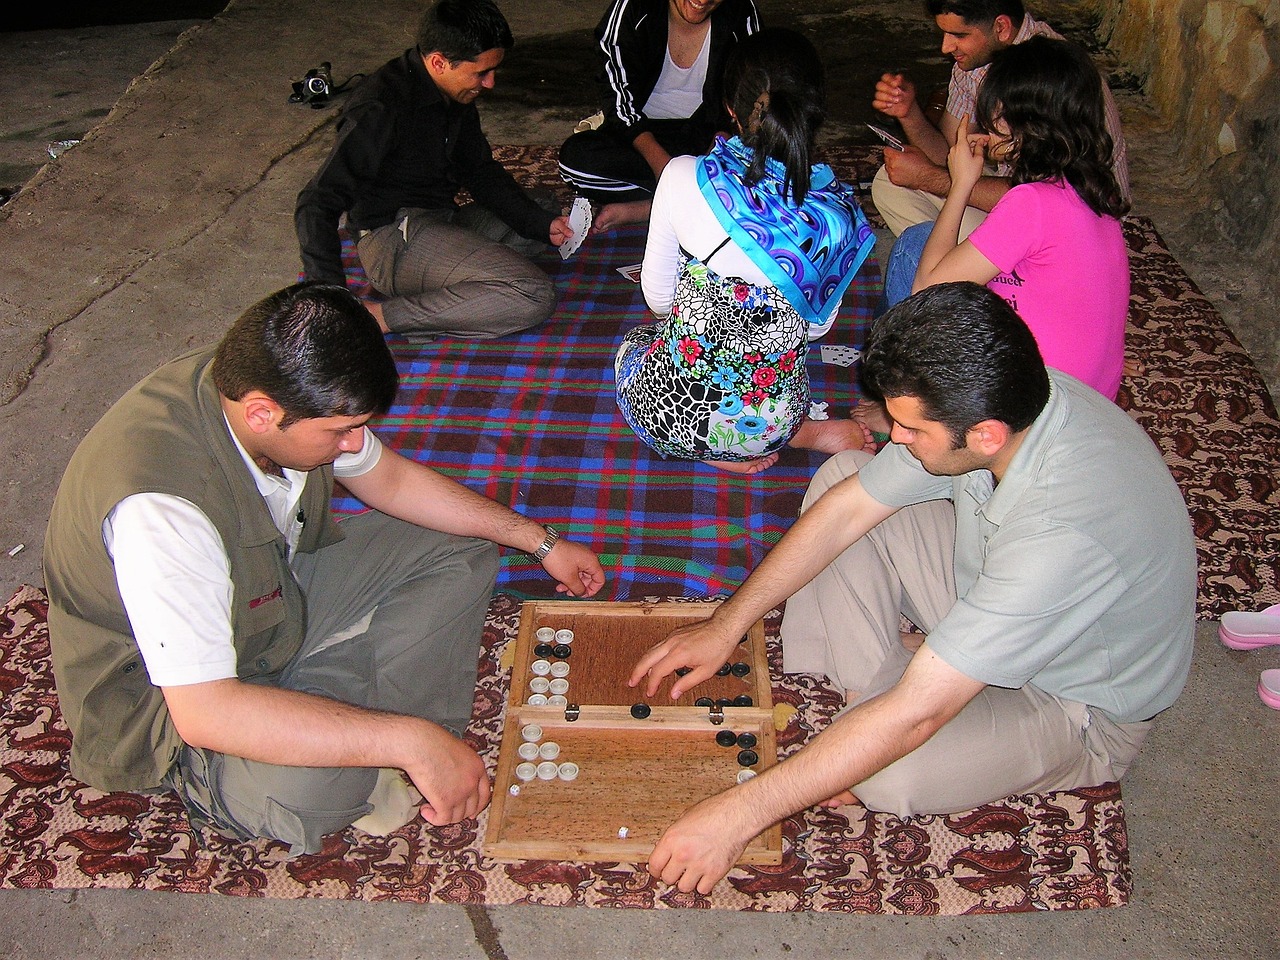 Backgammon spillere i aktion med deres spil